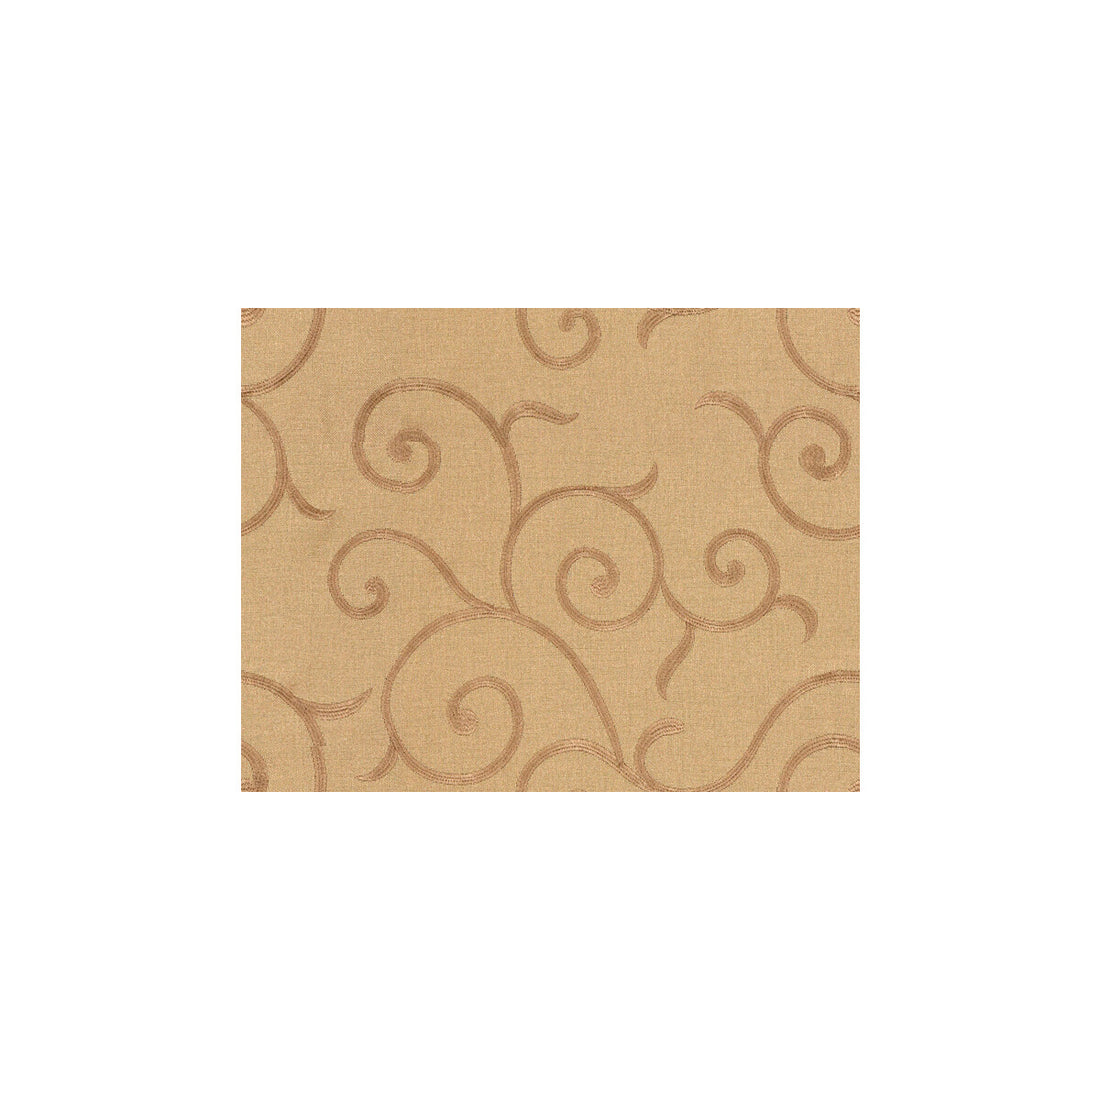 Kravet Basics fabric in 3610-16 color - pattern 3610.16.0 - by Kravet Basics